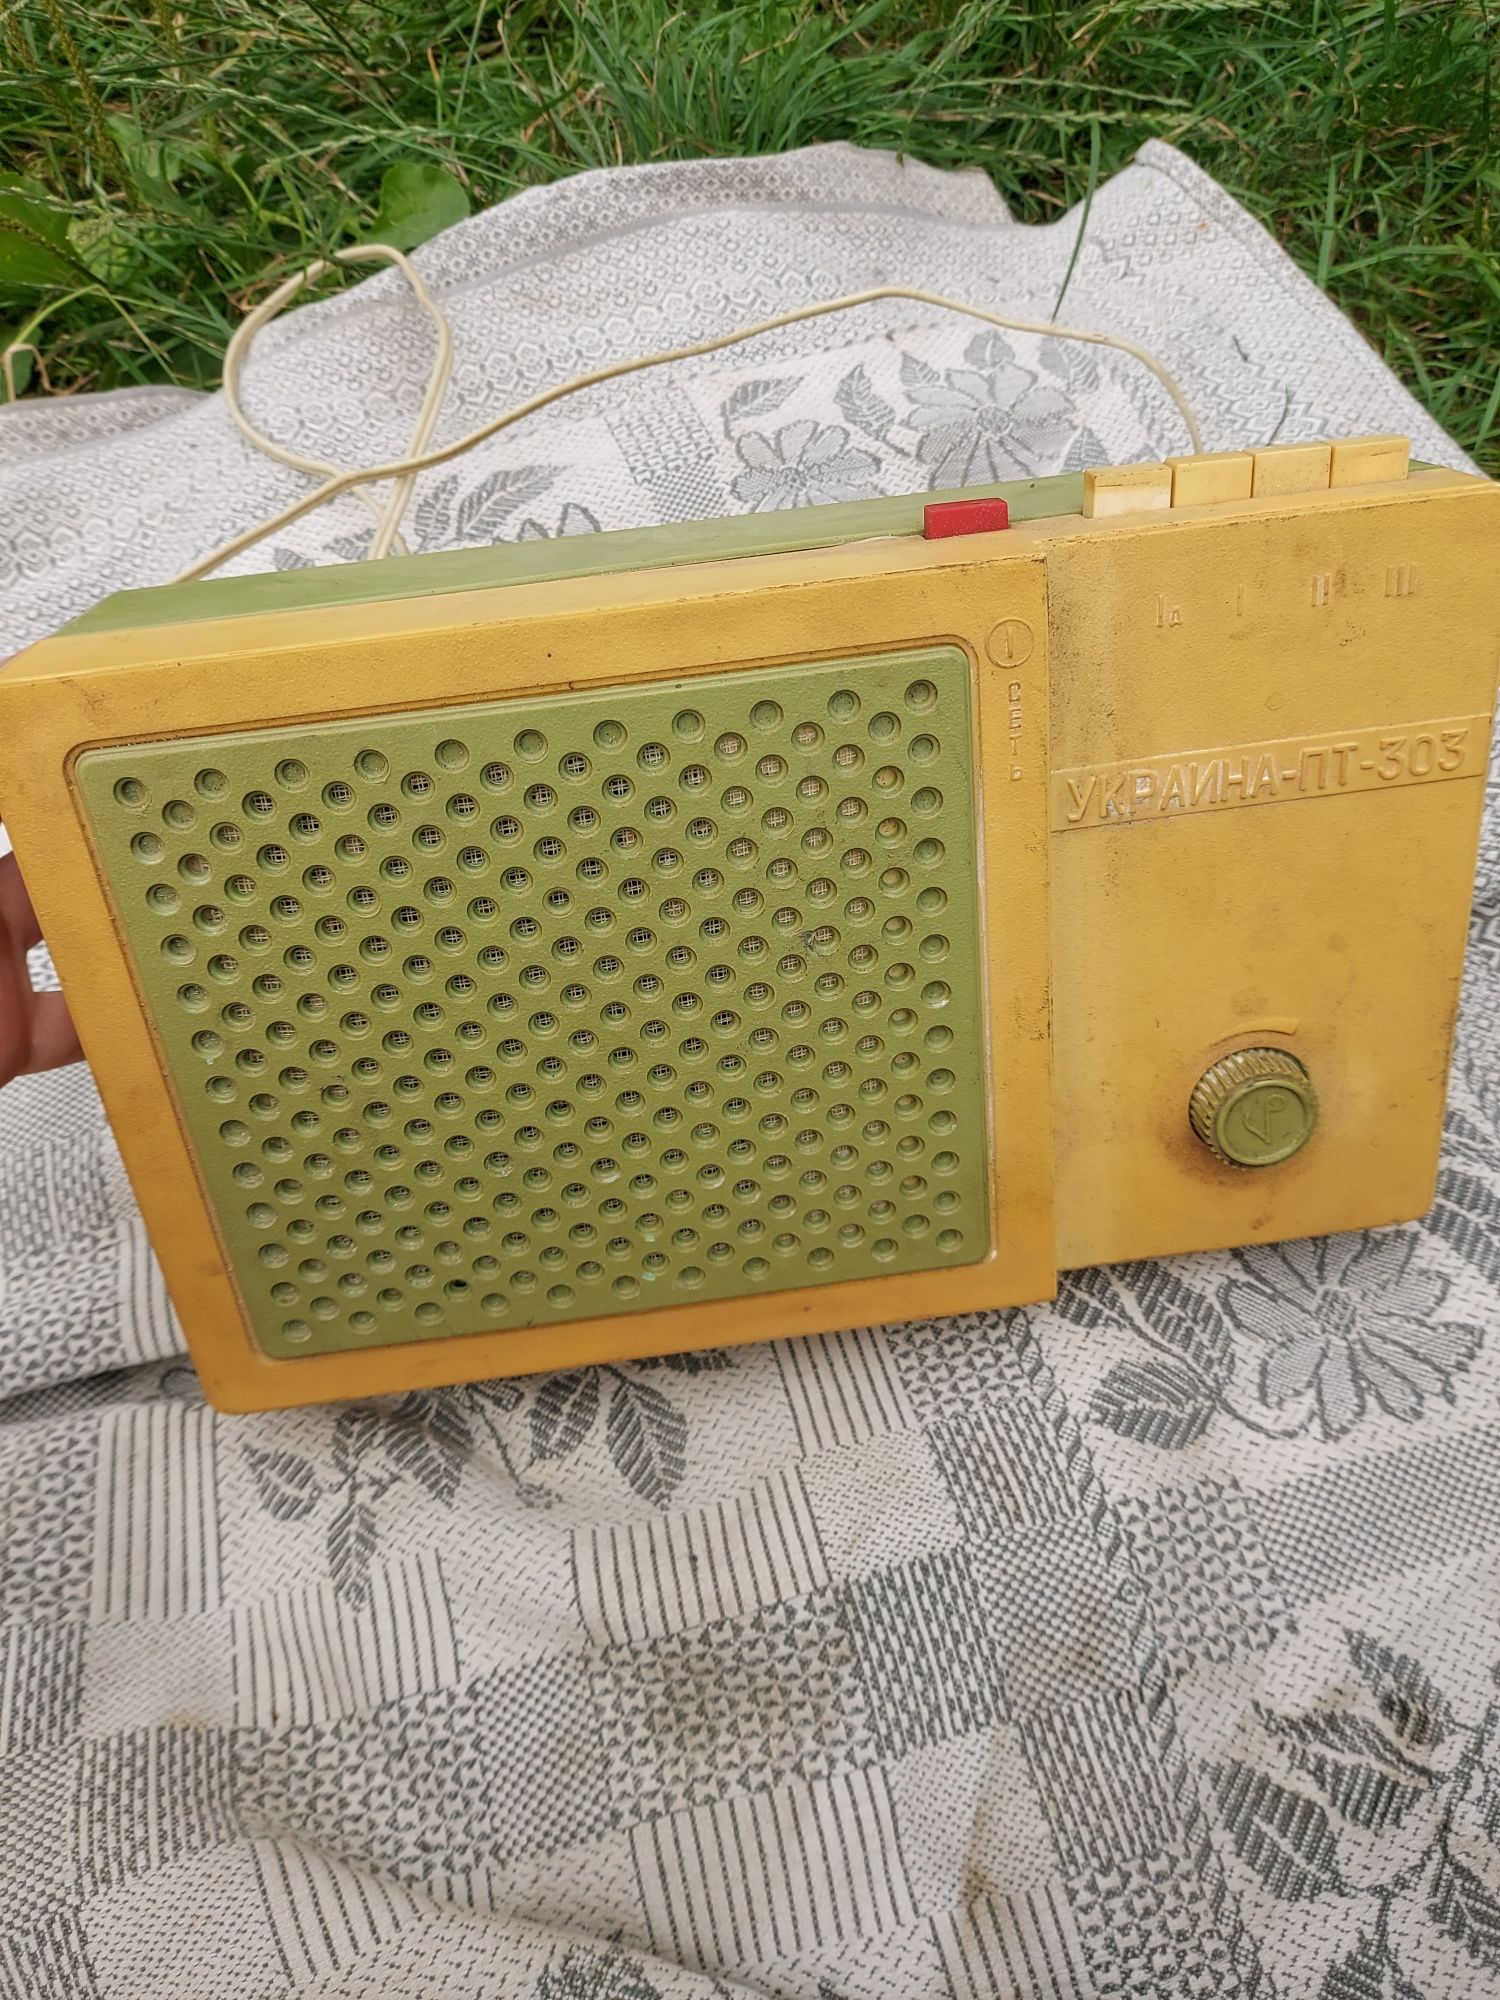 Радиоточка трехпрограммная Украина-ПТ-303303 СССР